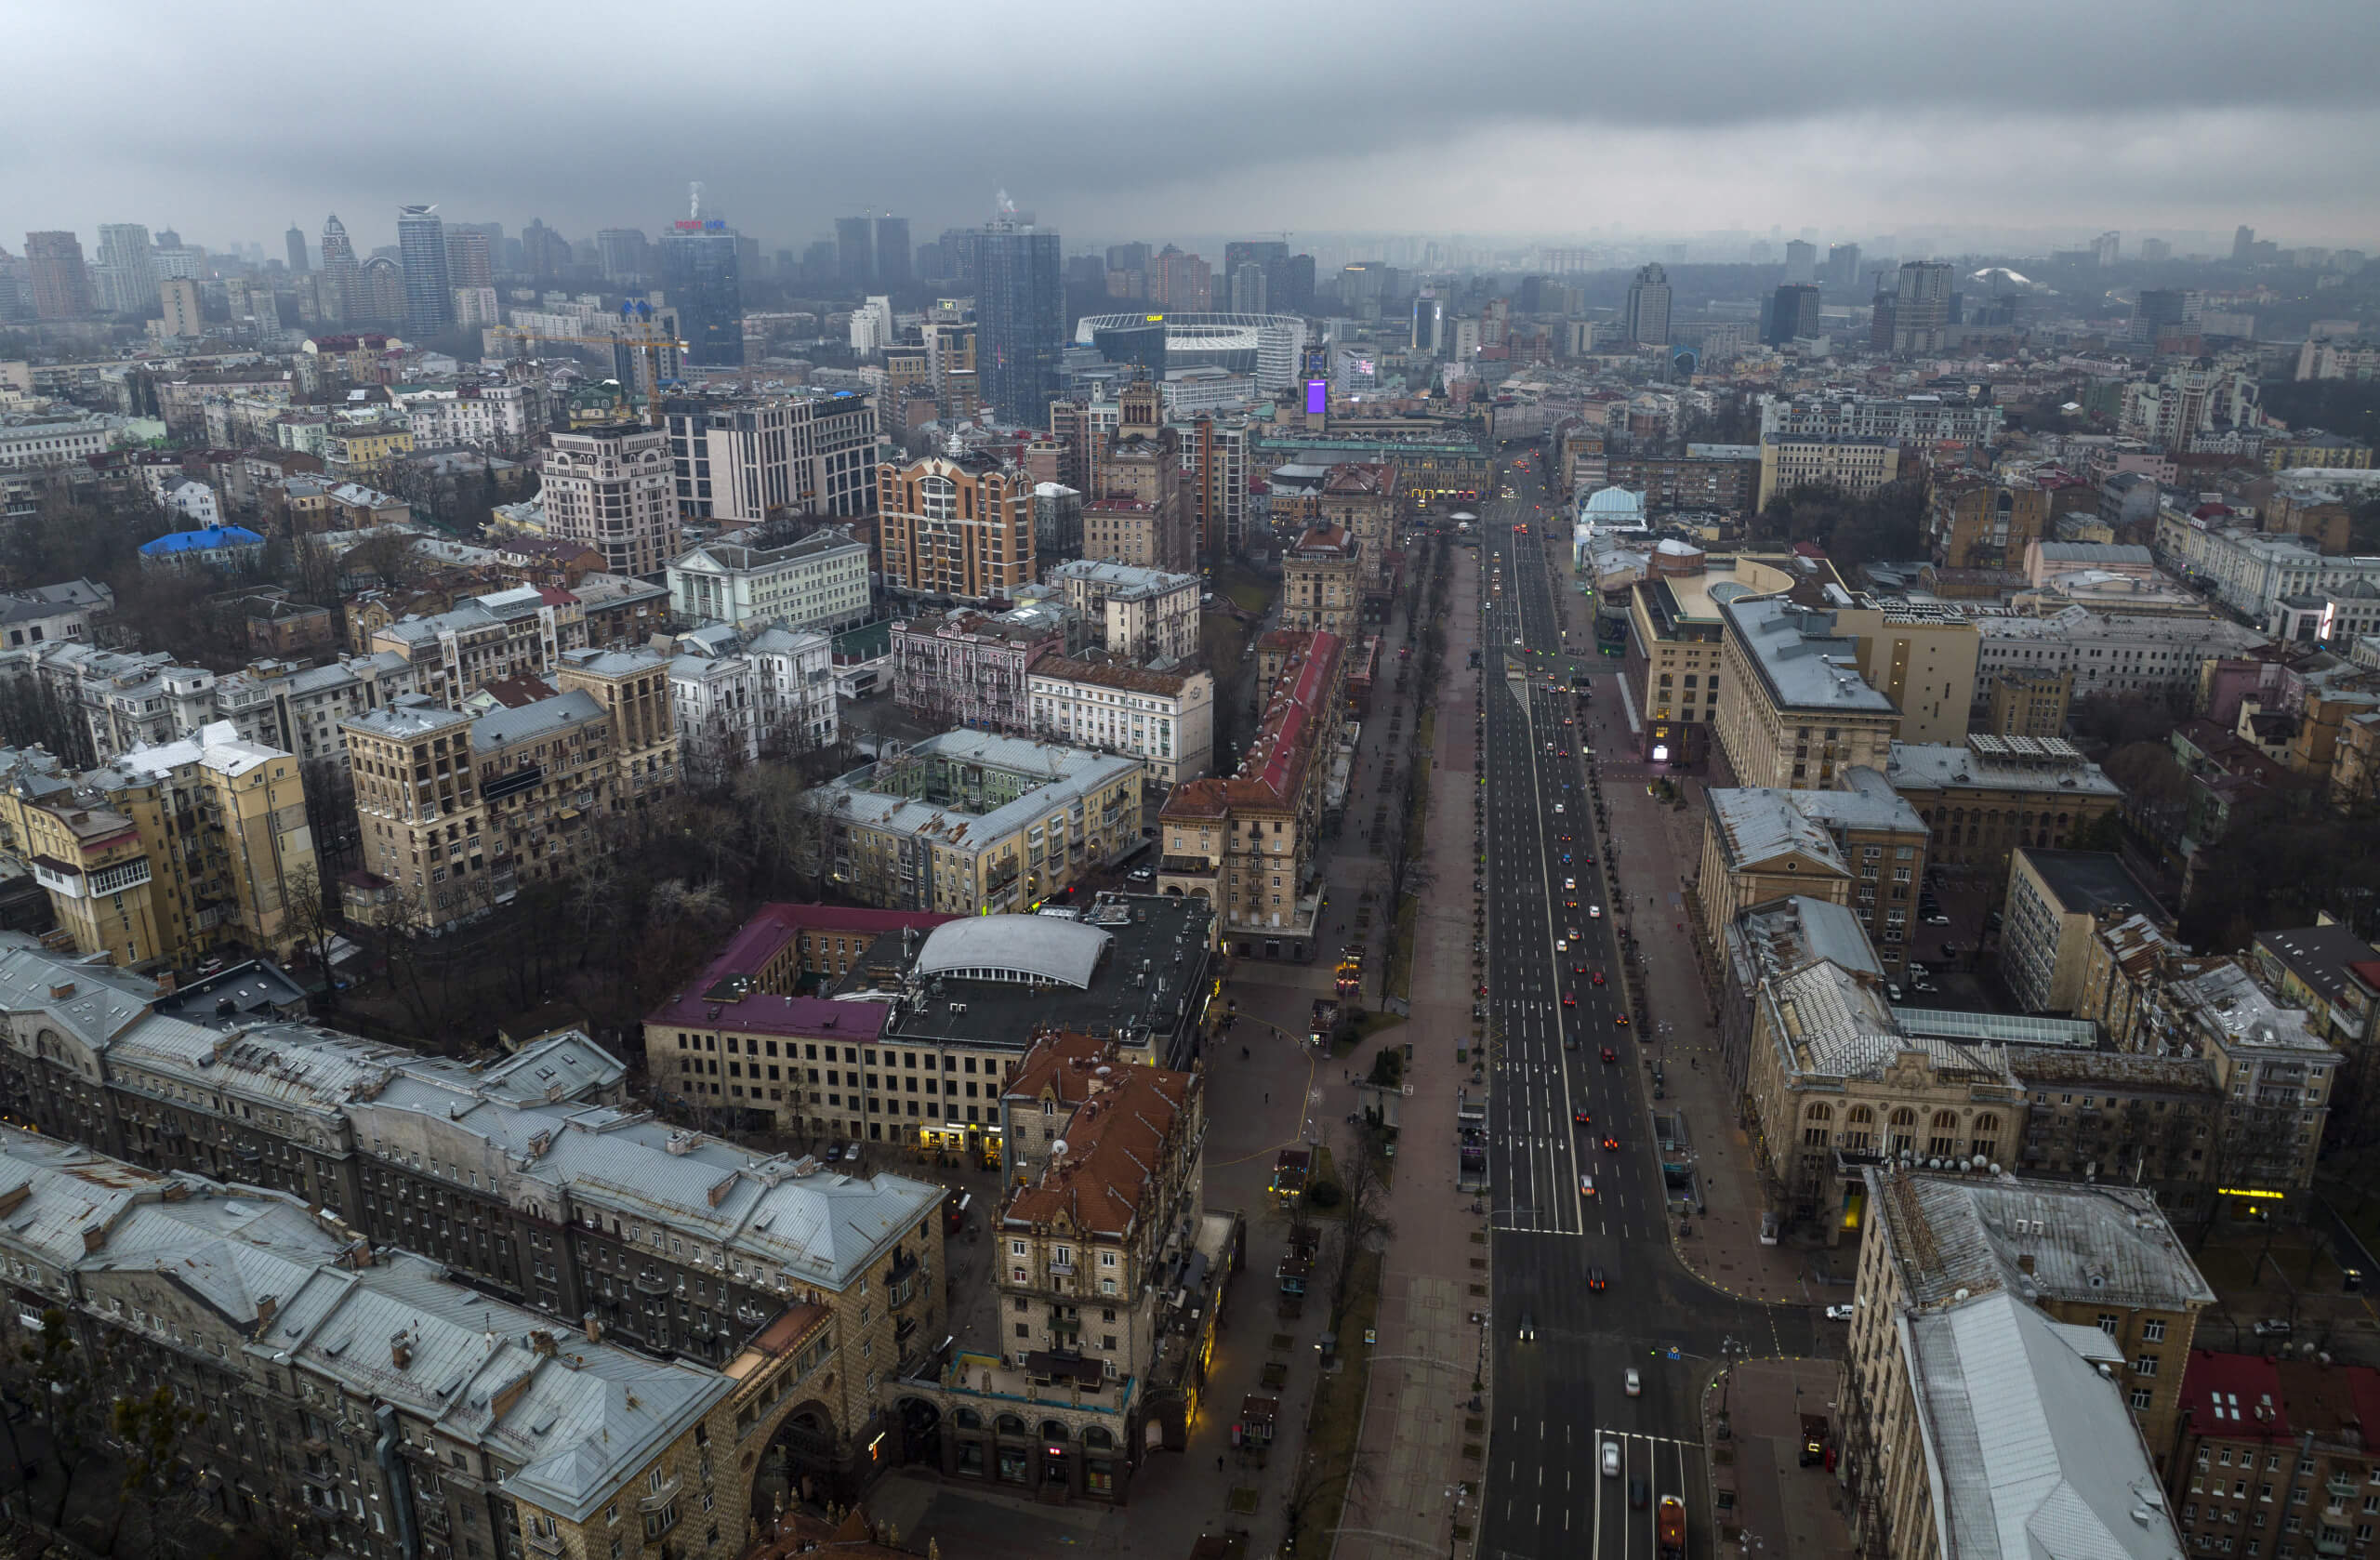 Die Hauptstadt Kiew am Morgen nach dem Angriff russischer Truppen auf die Ukraine (Foto: Picture Alliance / Associated Press / Emilio Morenatti)